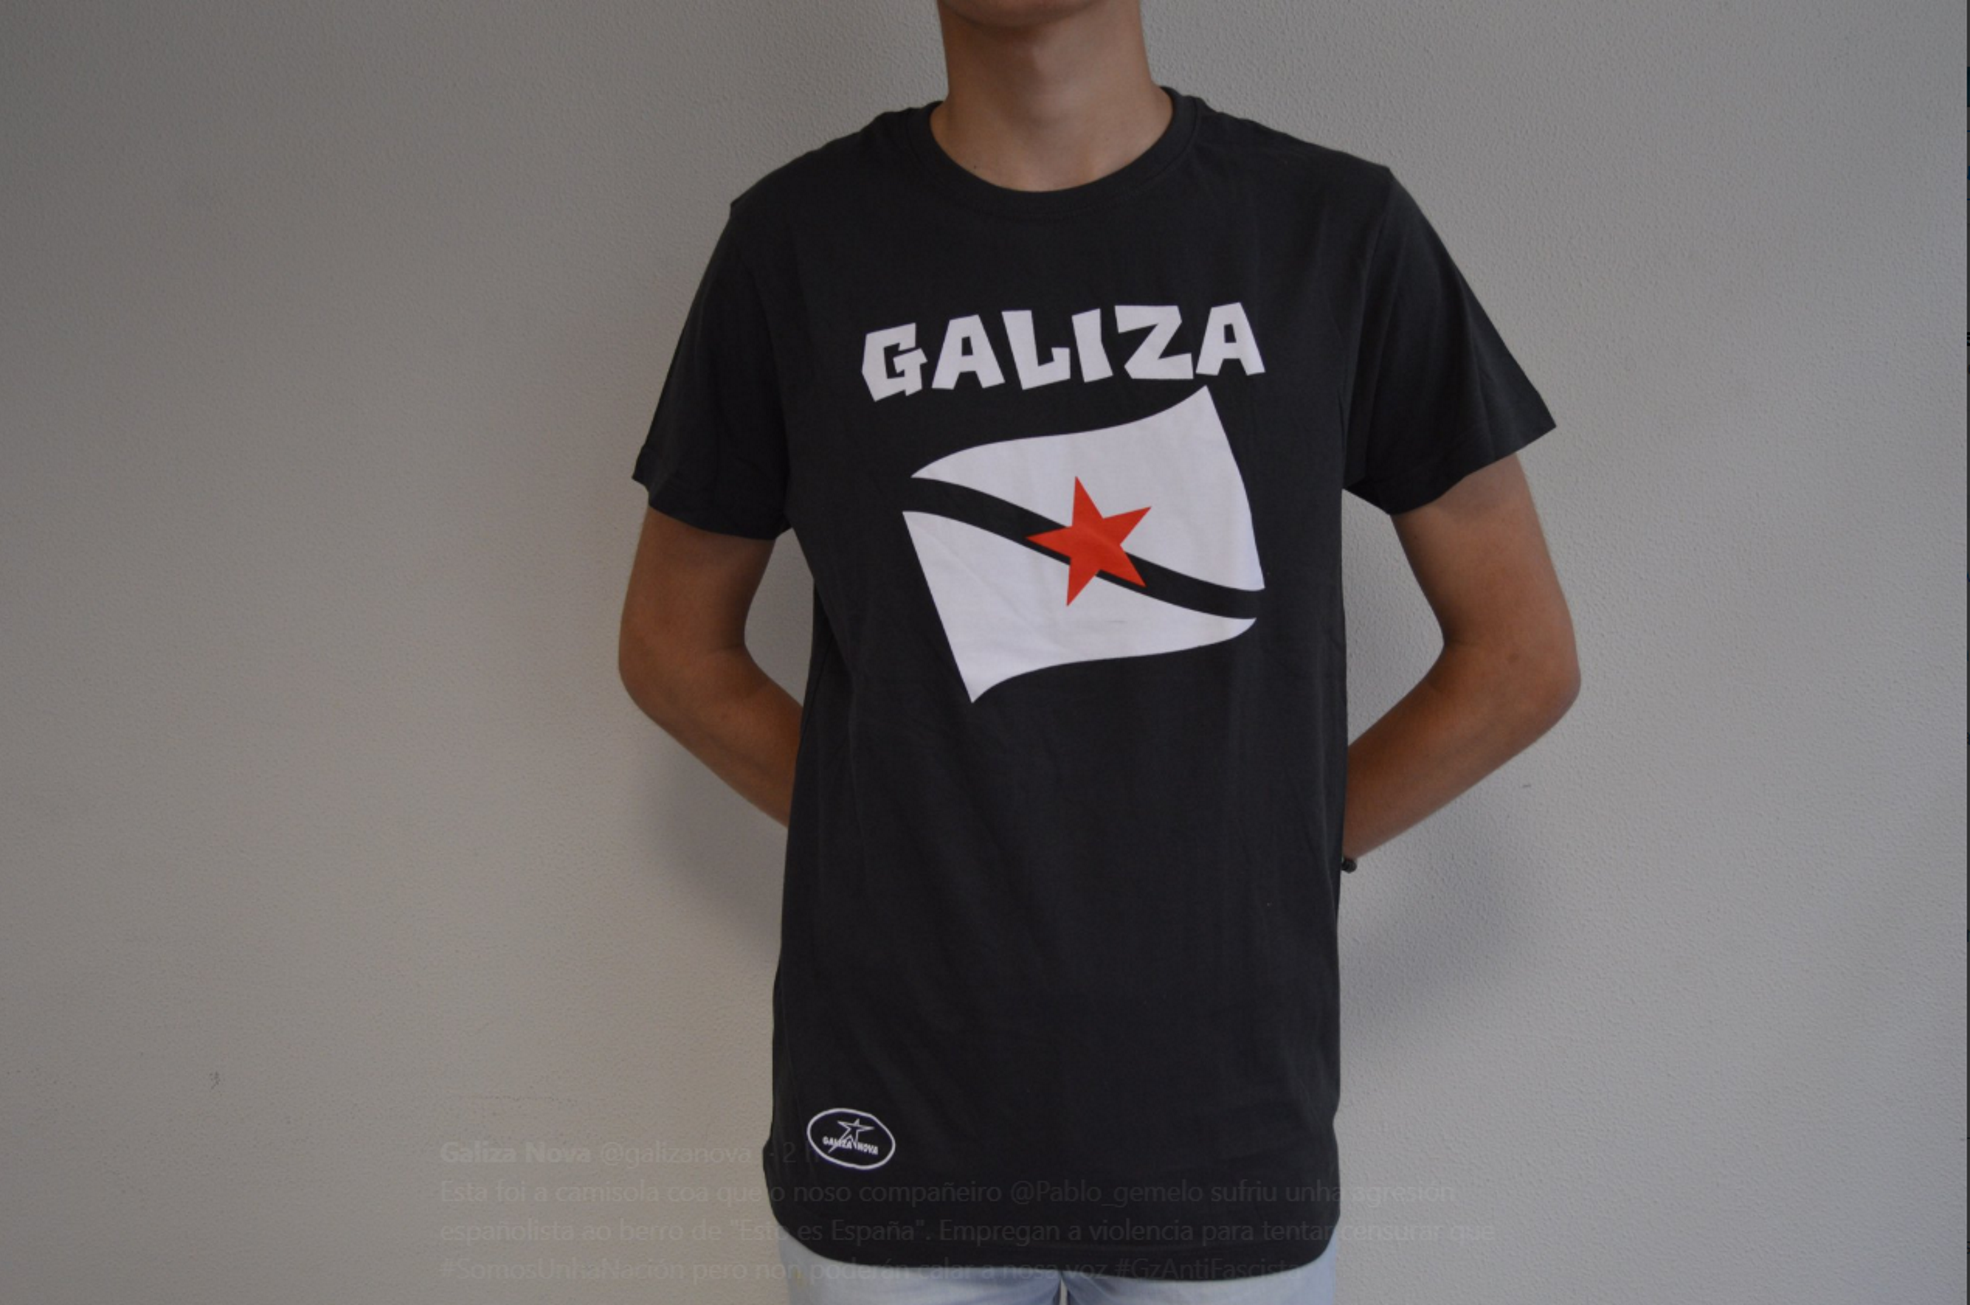 Agreden a un joven por llevar una camiseta con la estelada gallega: "¡Esto es España!"